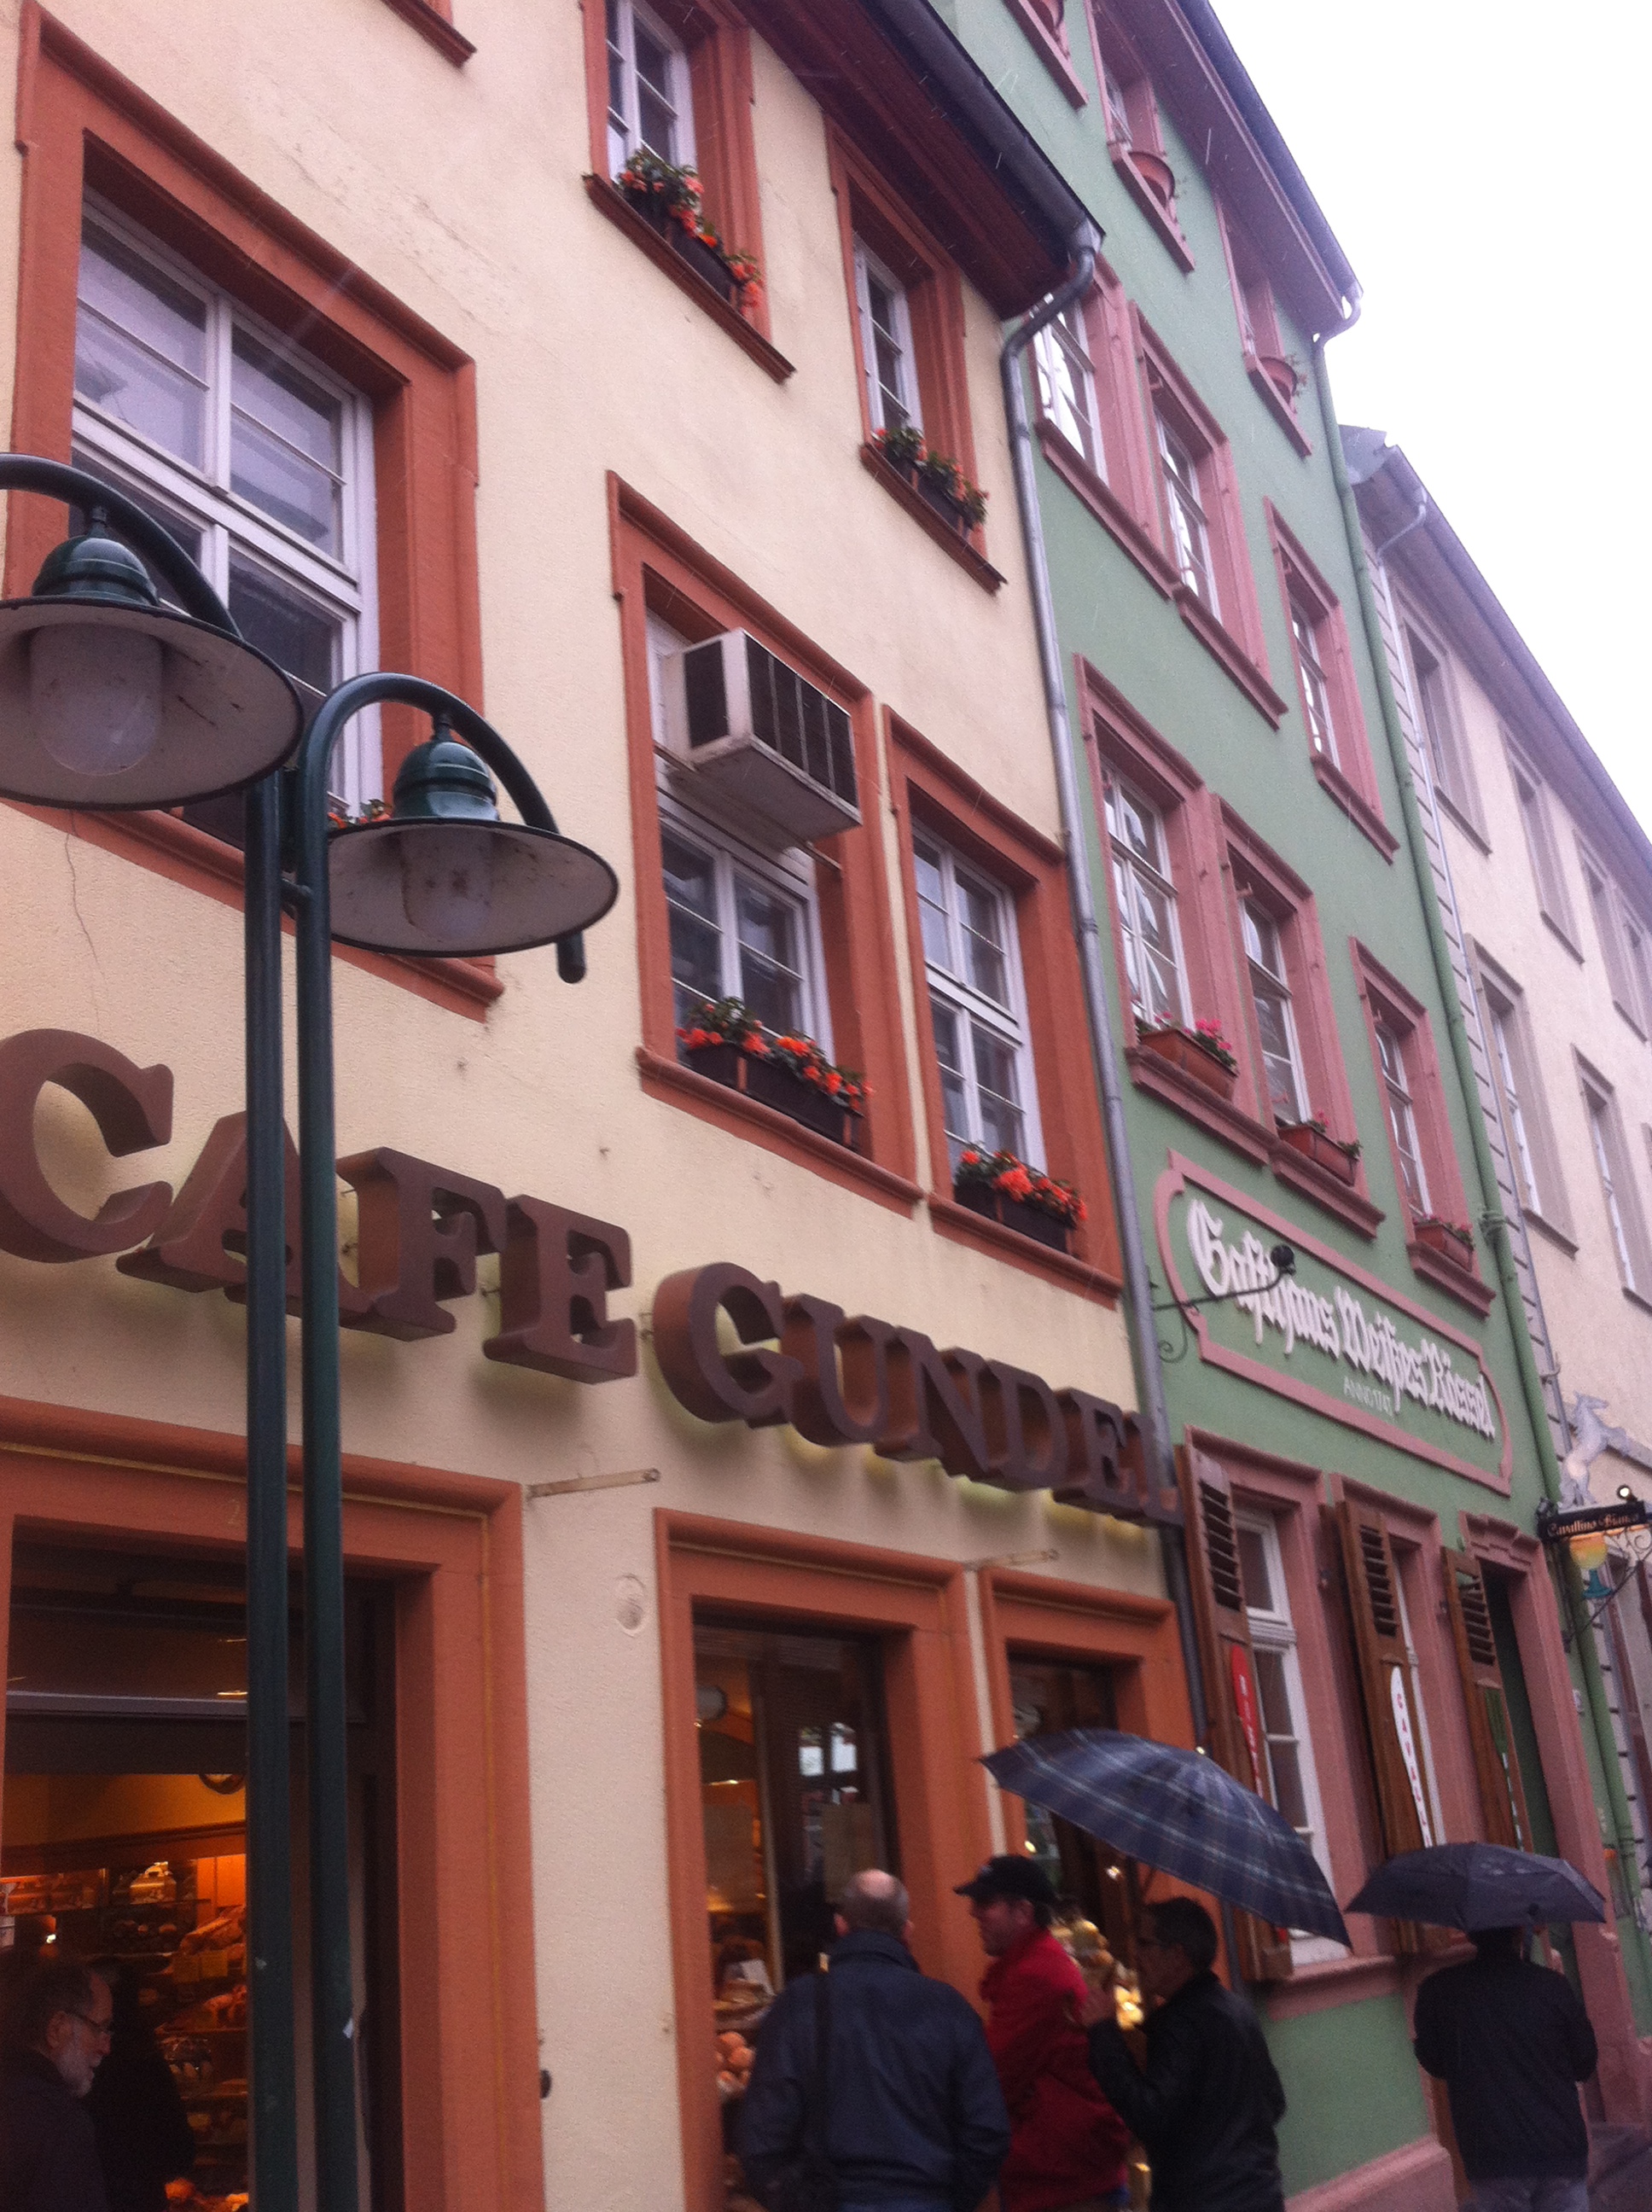 Café Gundel in Heidelberg